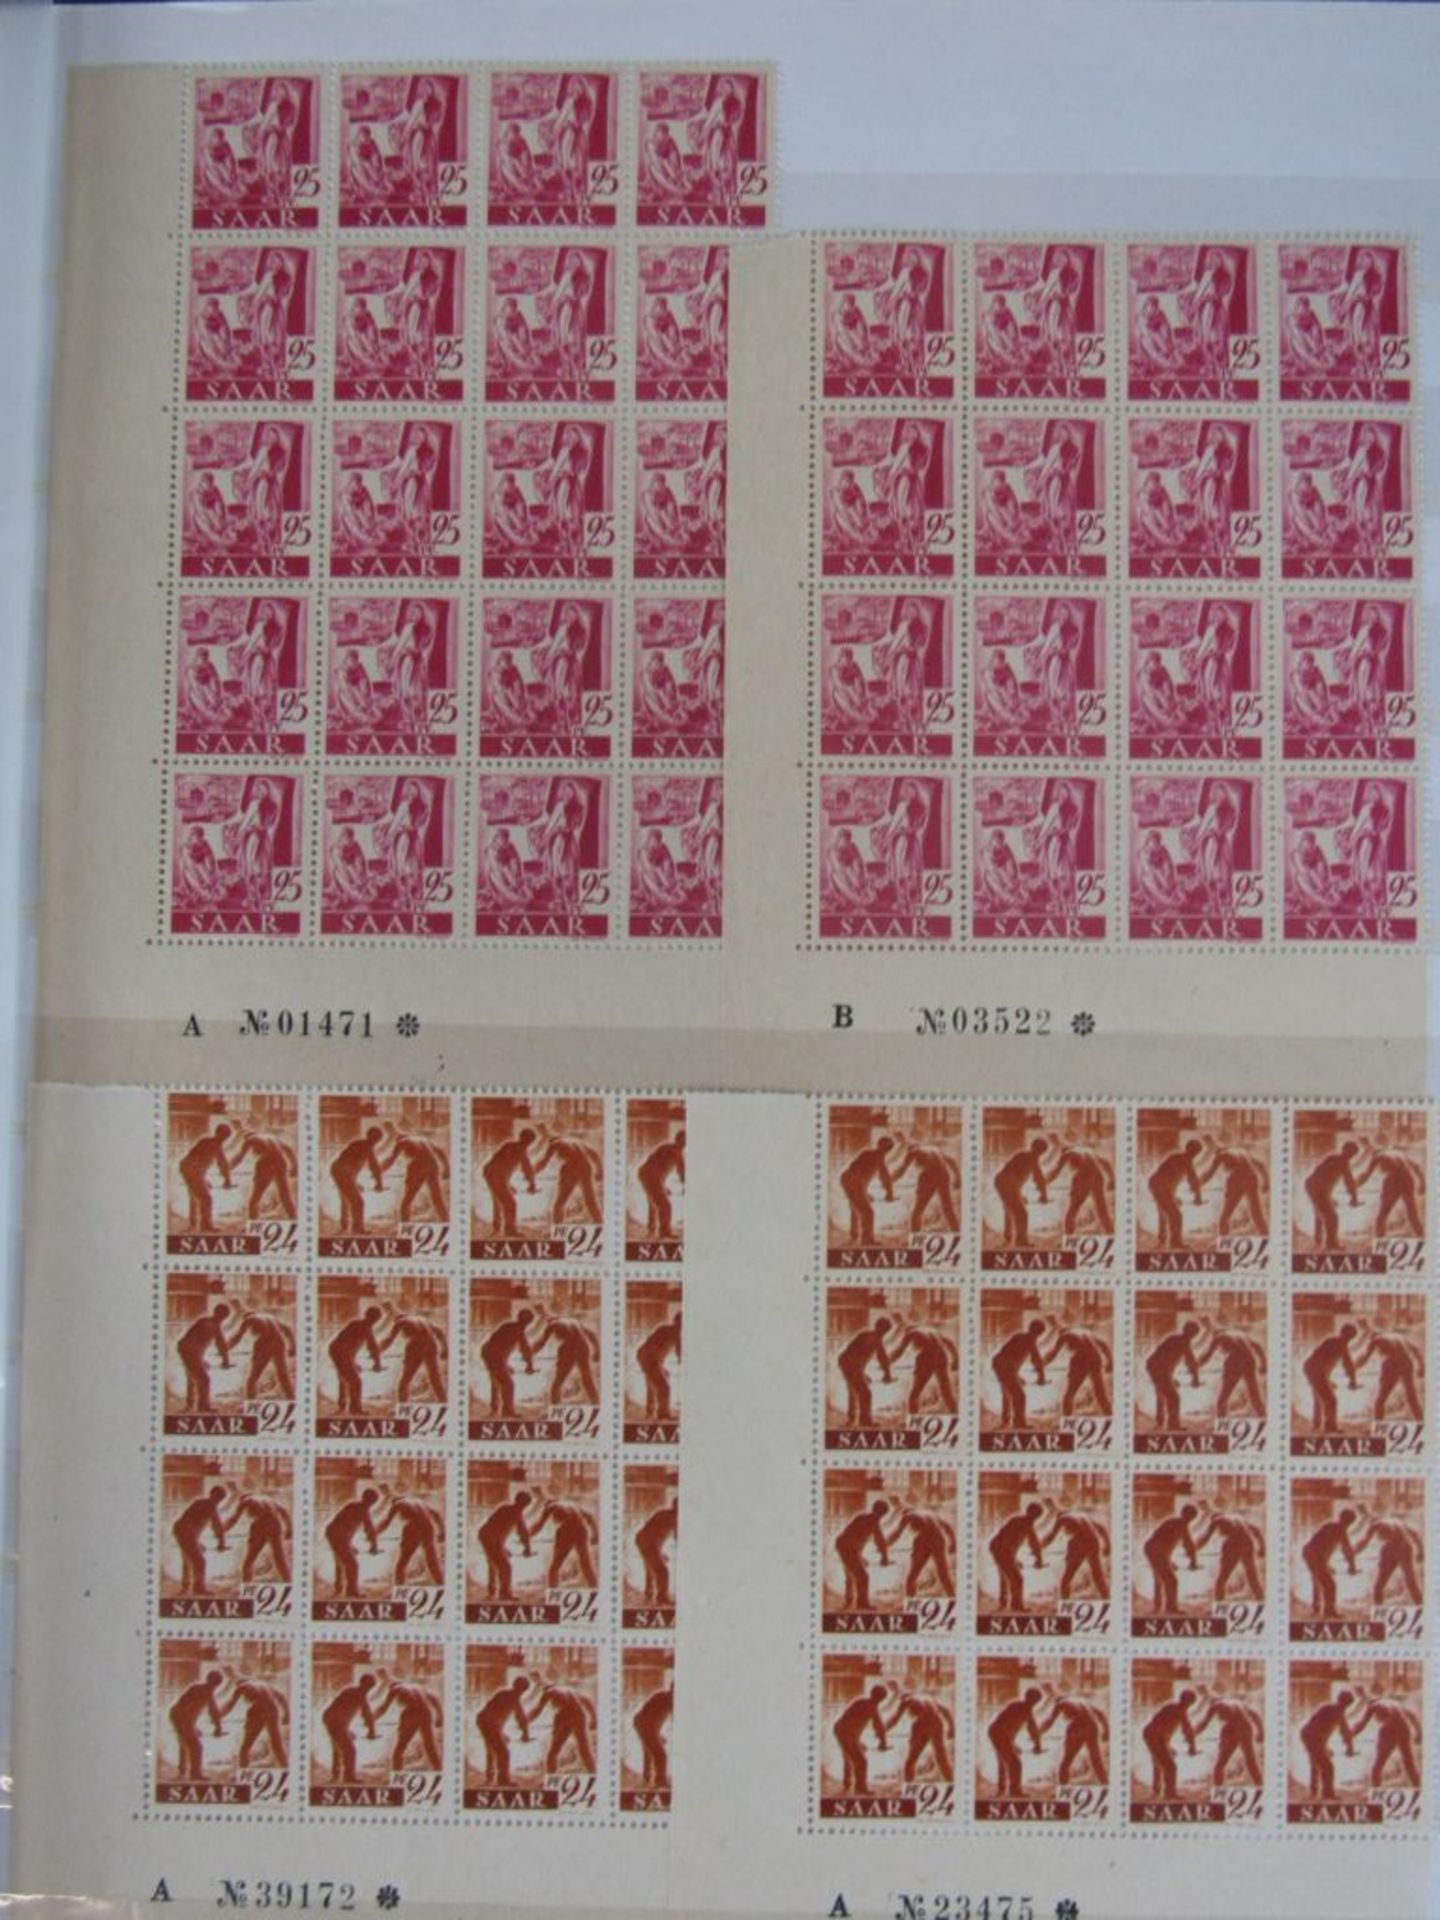 Karton Deutschland von AD - 50ger Jahre für den Spezialisten, Bogenteile, Marken usw. - Bild 10 aus 18